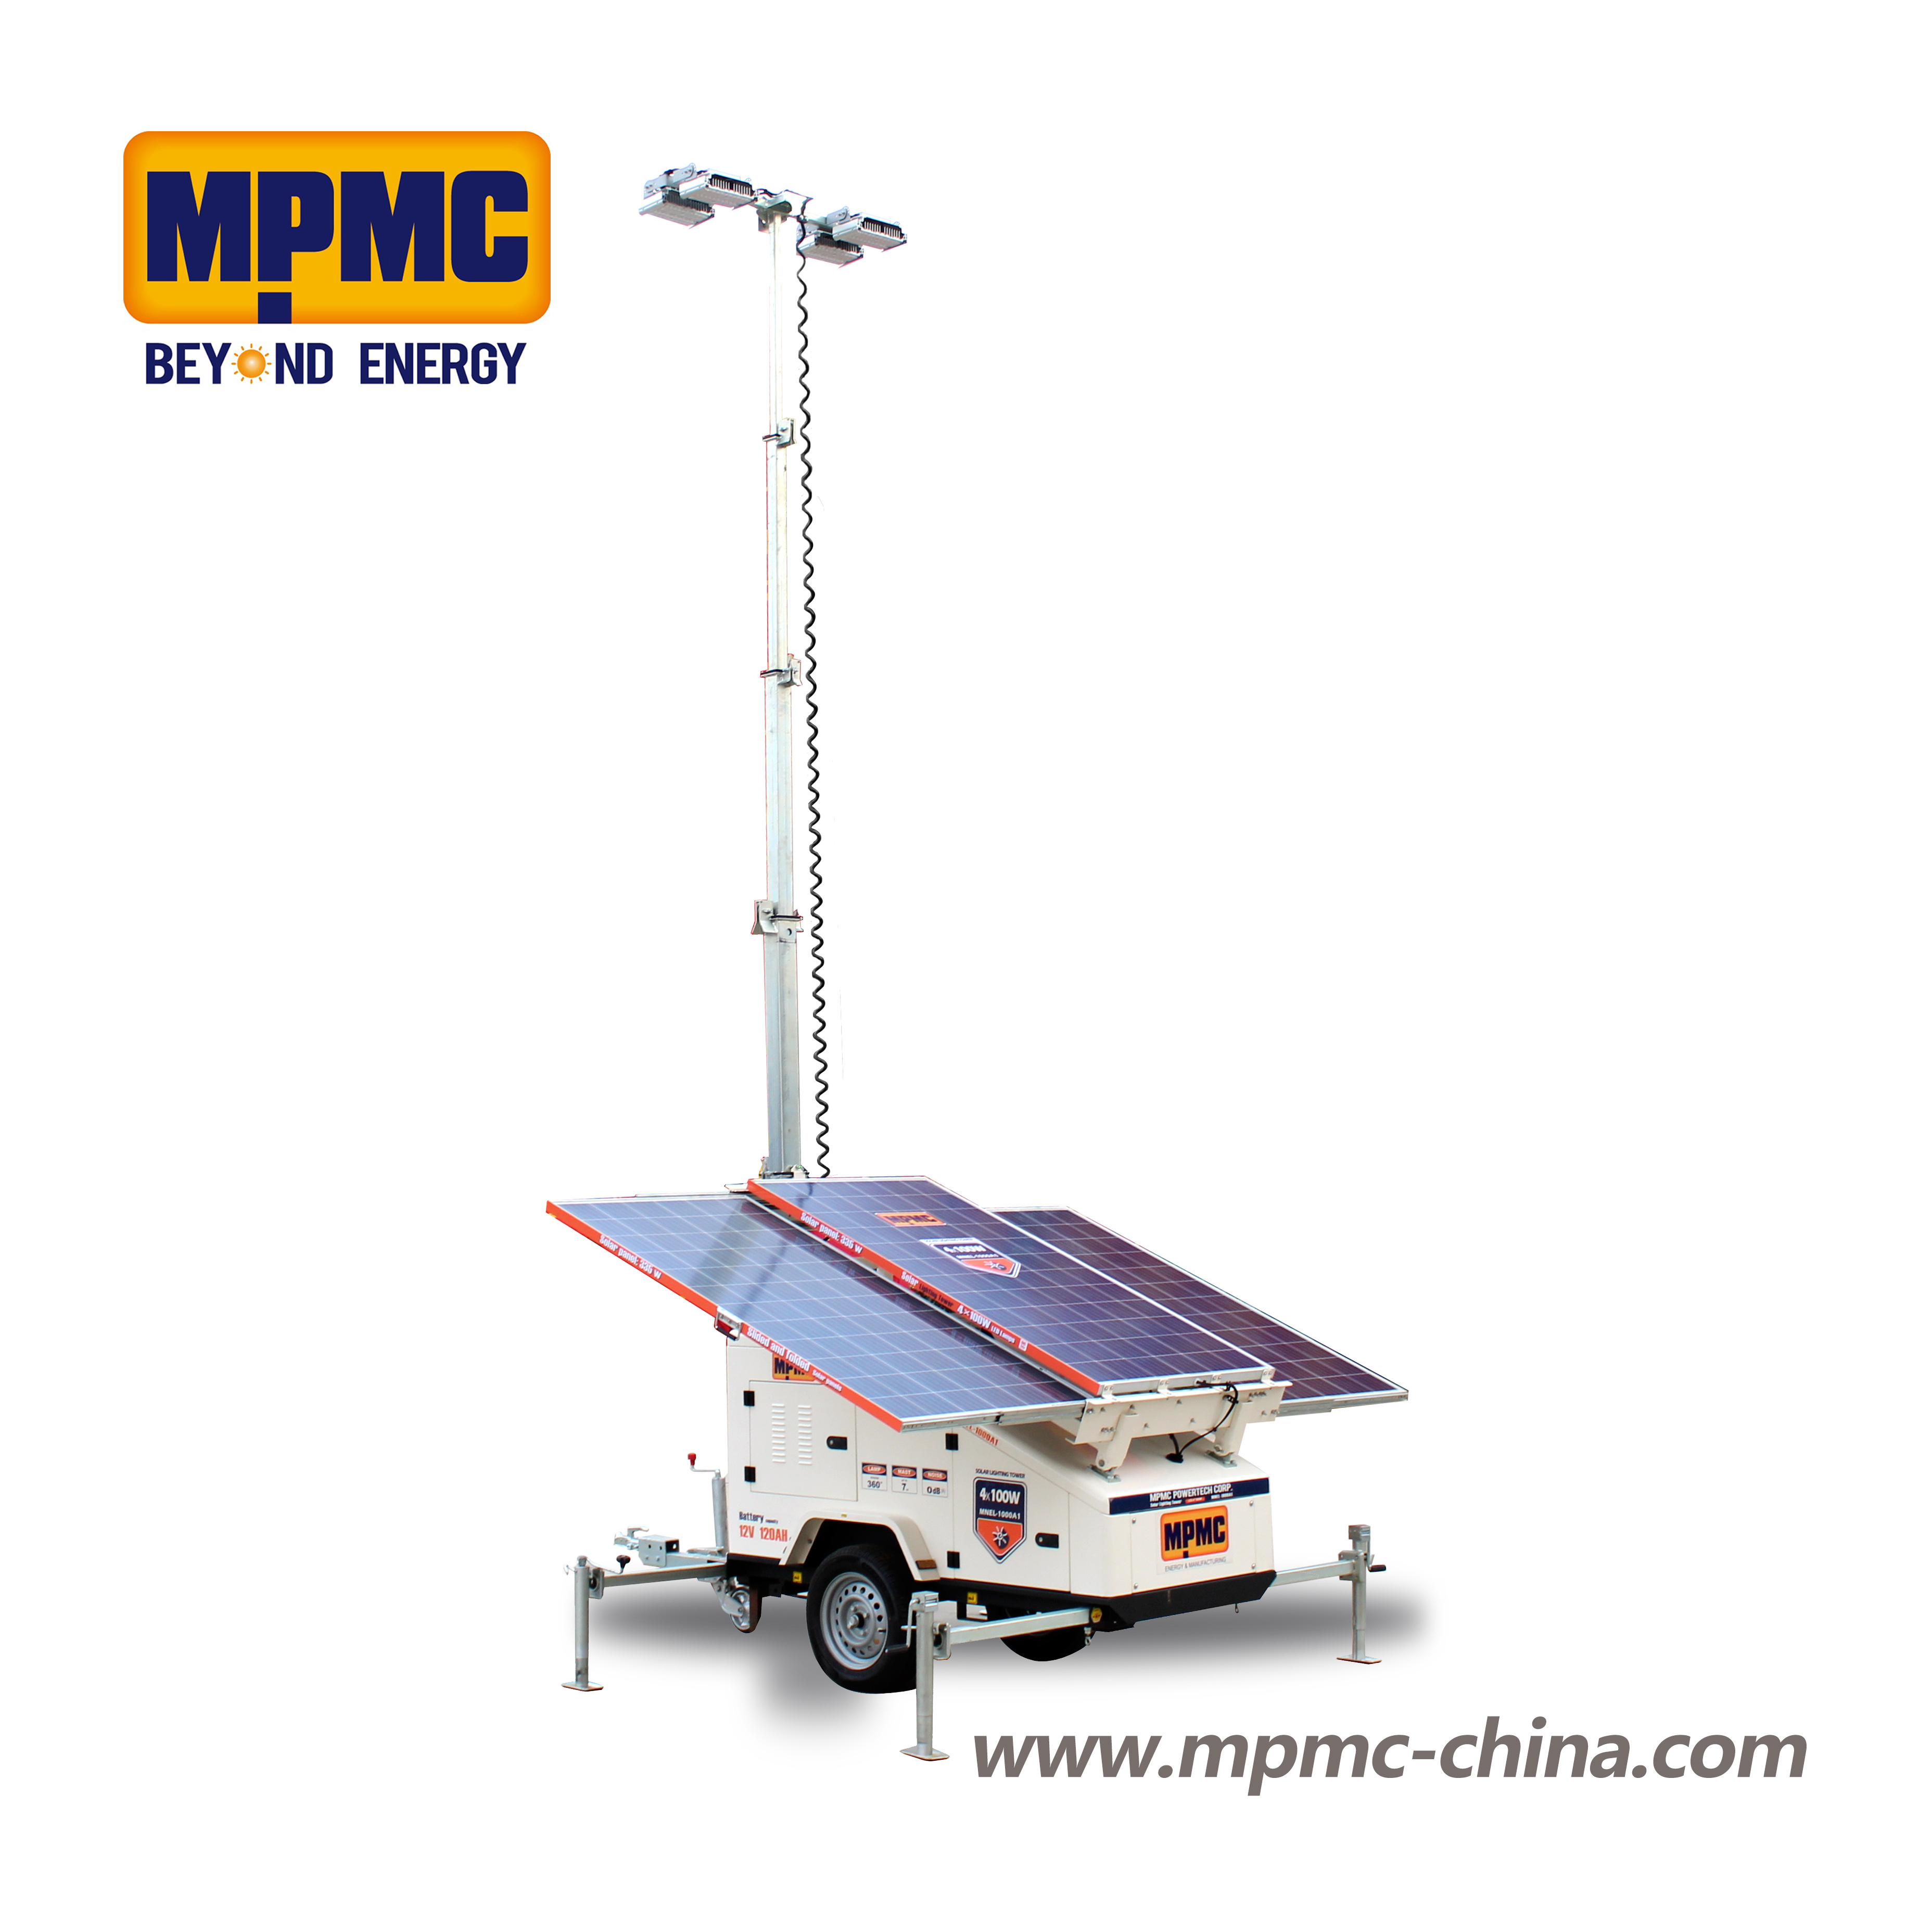 太陽能型HSL系列 Made By MPMC